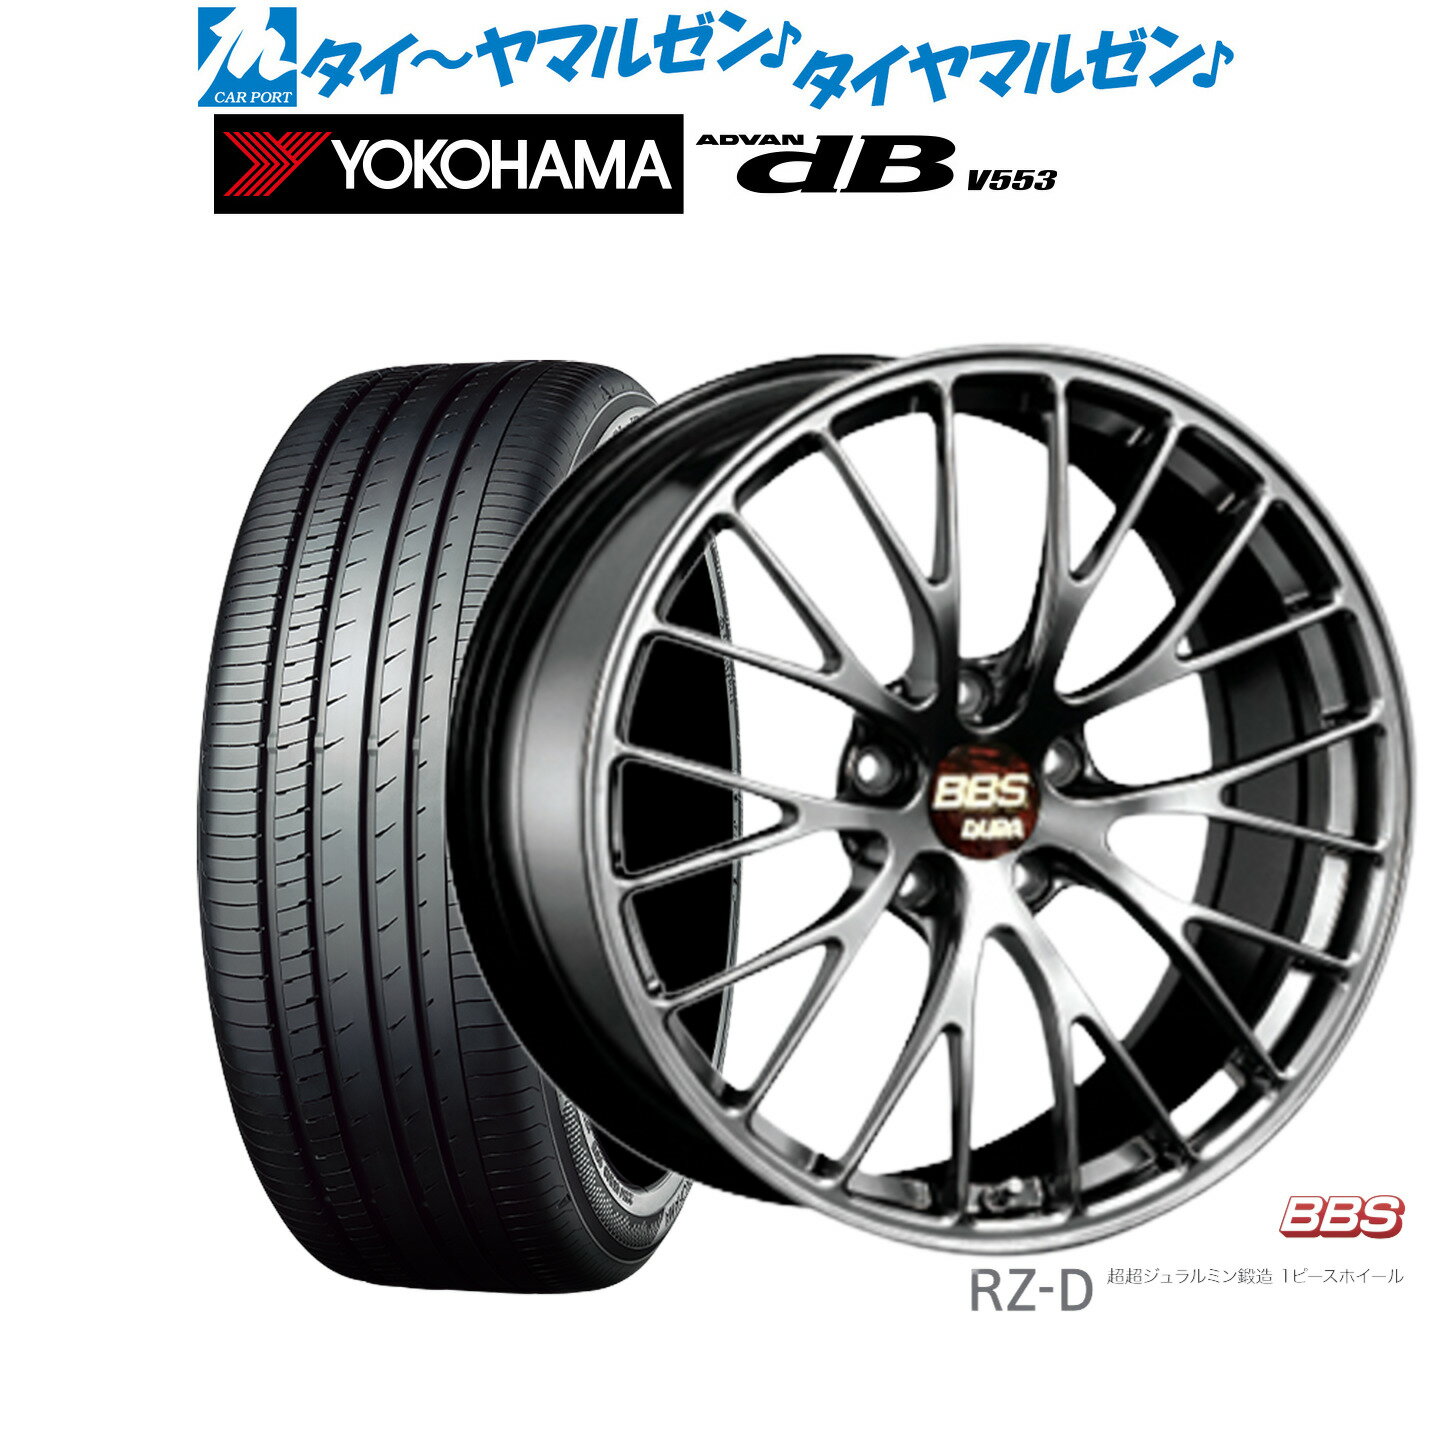 新品 サマータイヤ ホイール4本セットBBS JAPAN RZ-D19インチ 8.5Jヨコハマ ADVAN アドバン dB(V553)235/40R19